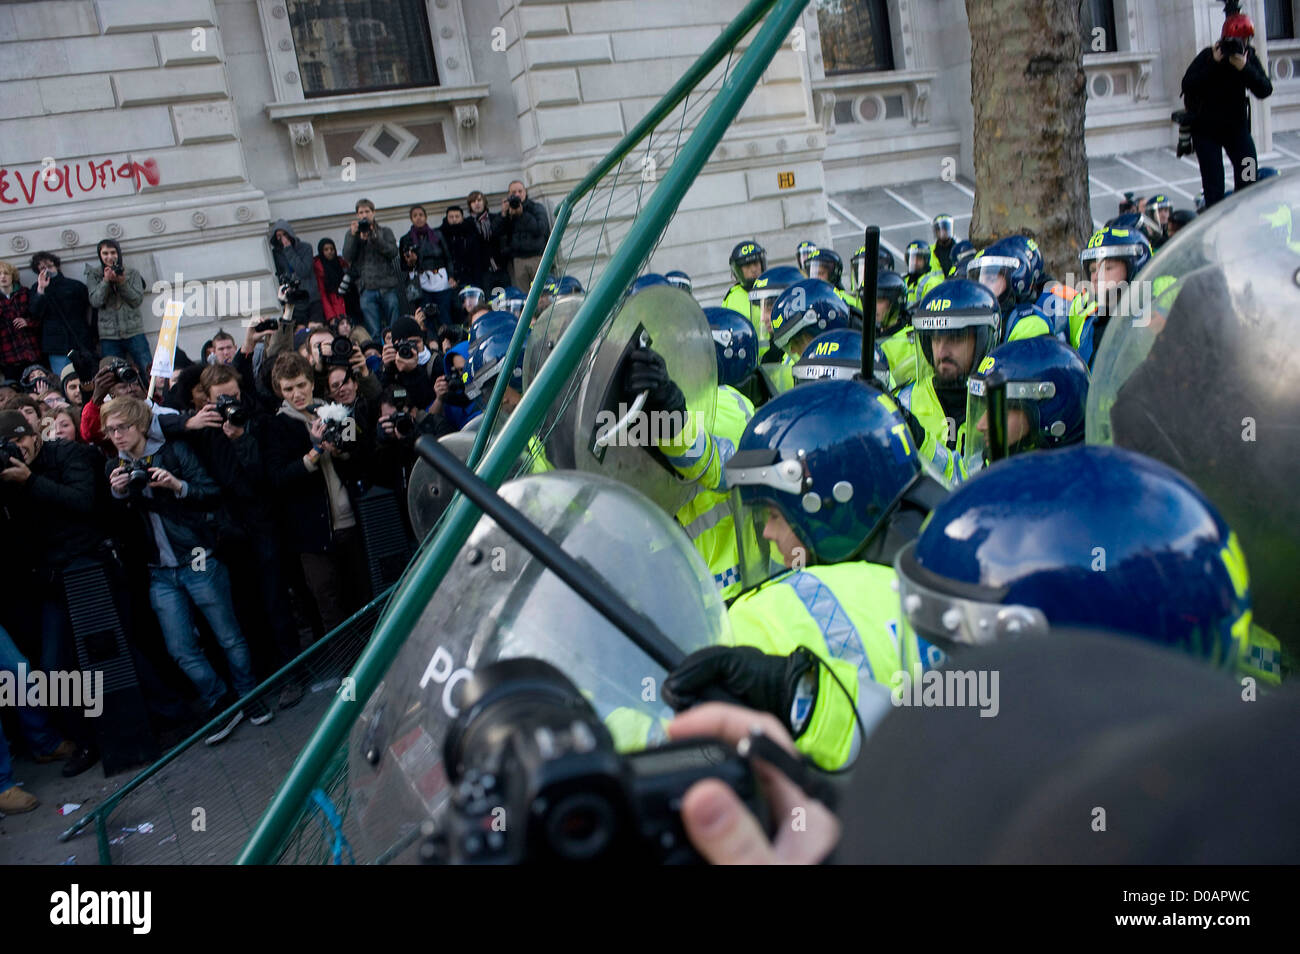 Studenten Zusammenstoß mit der Polizei während einer Protestaktion am Whitehall über Pläne der Regierung, Finanzierung und Studiengebühren Studiengebühren zu ändern. Stockfoto